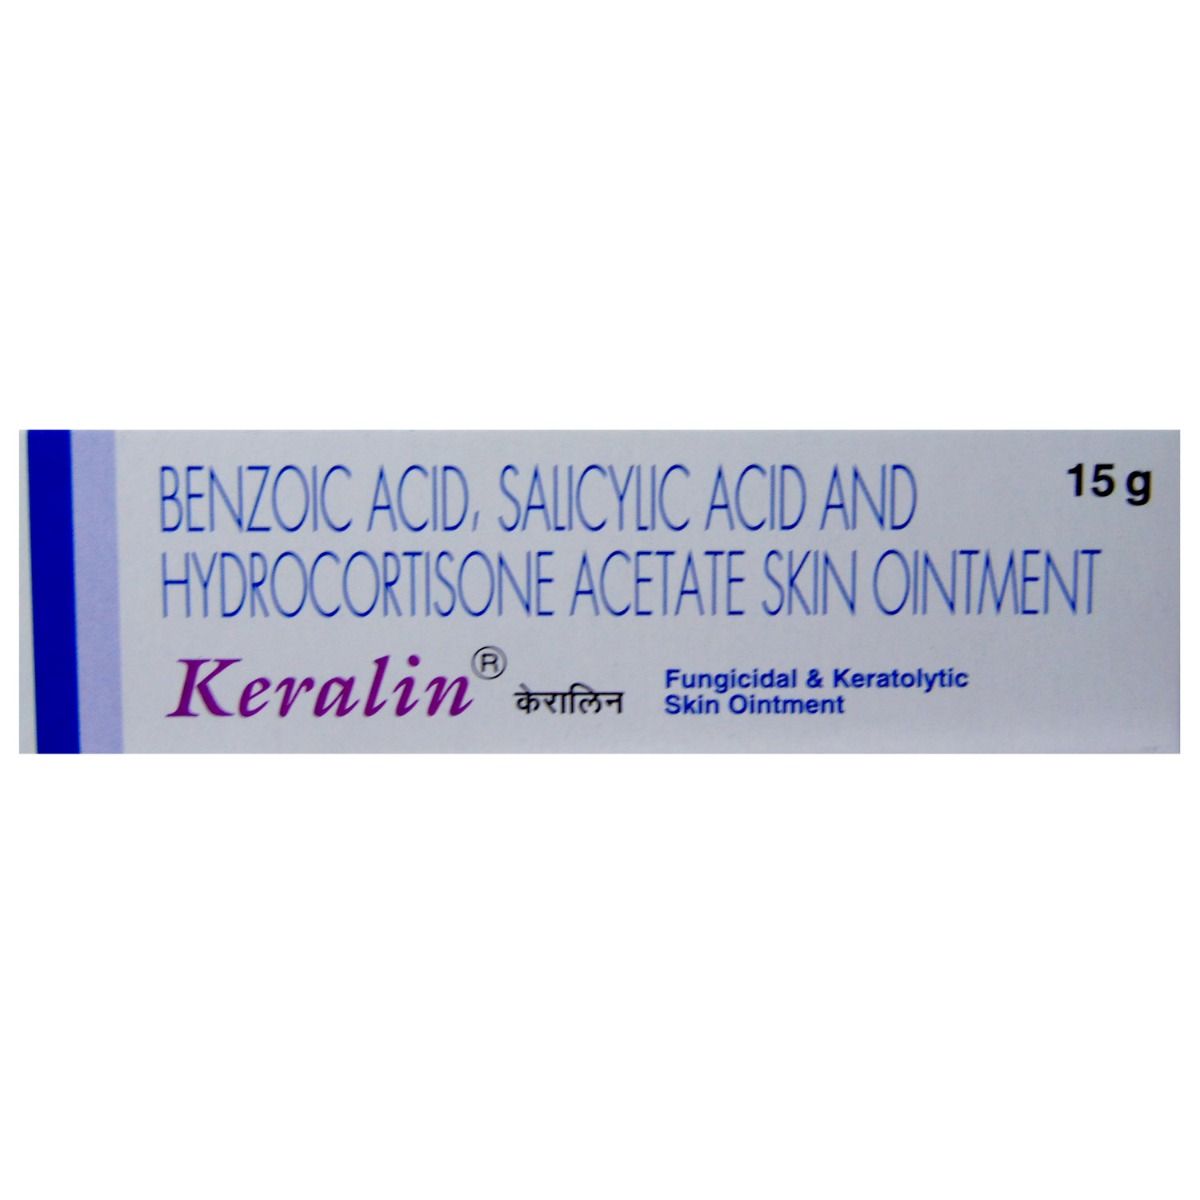 Buy Keralin Ointment 15 gm Online